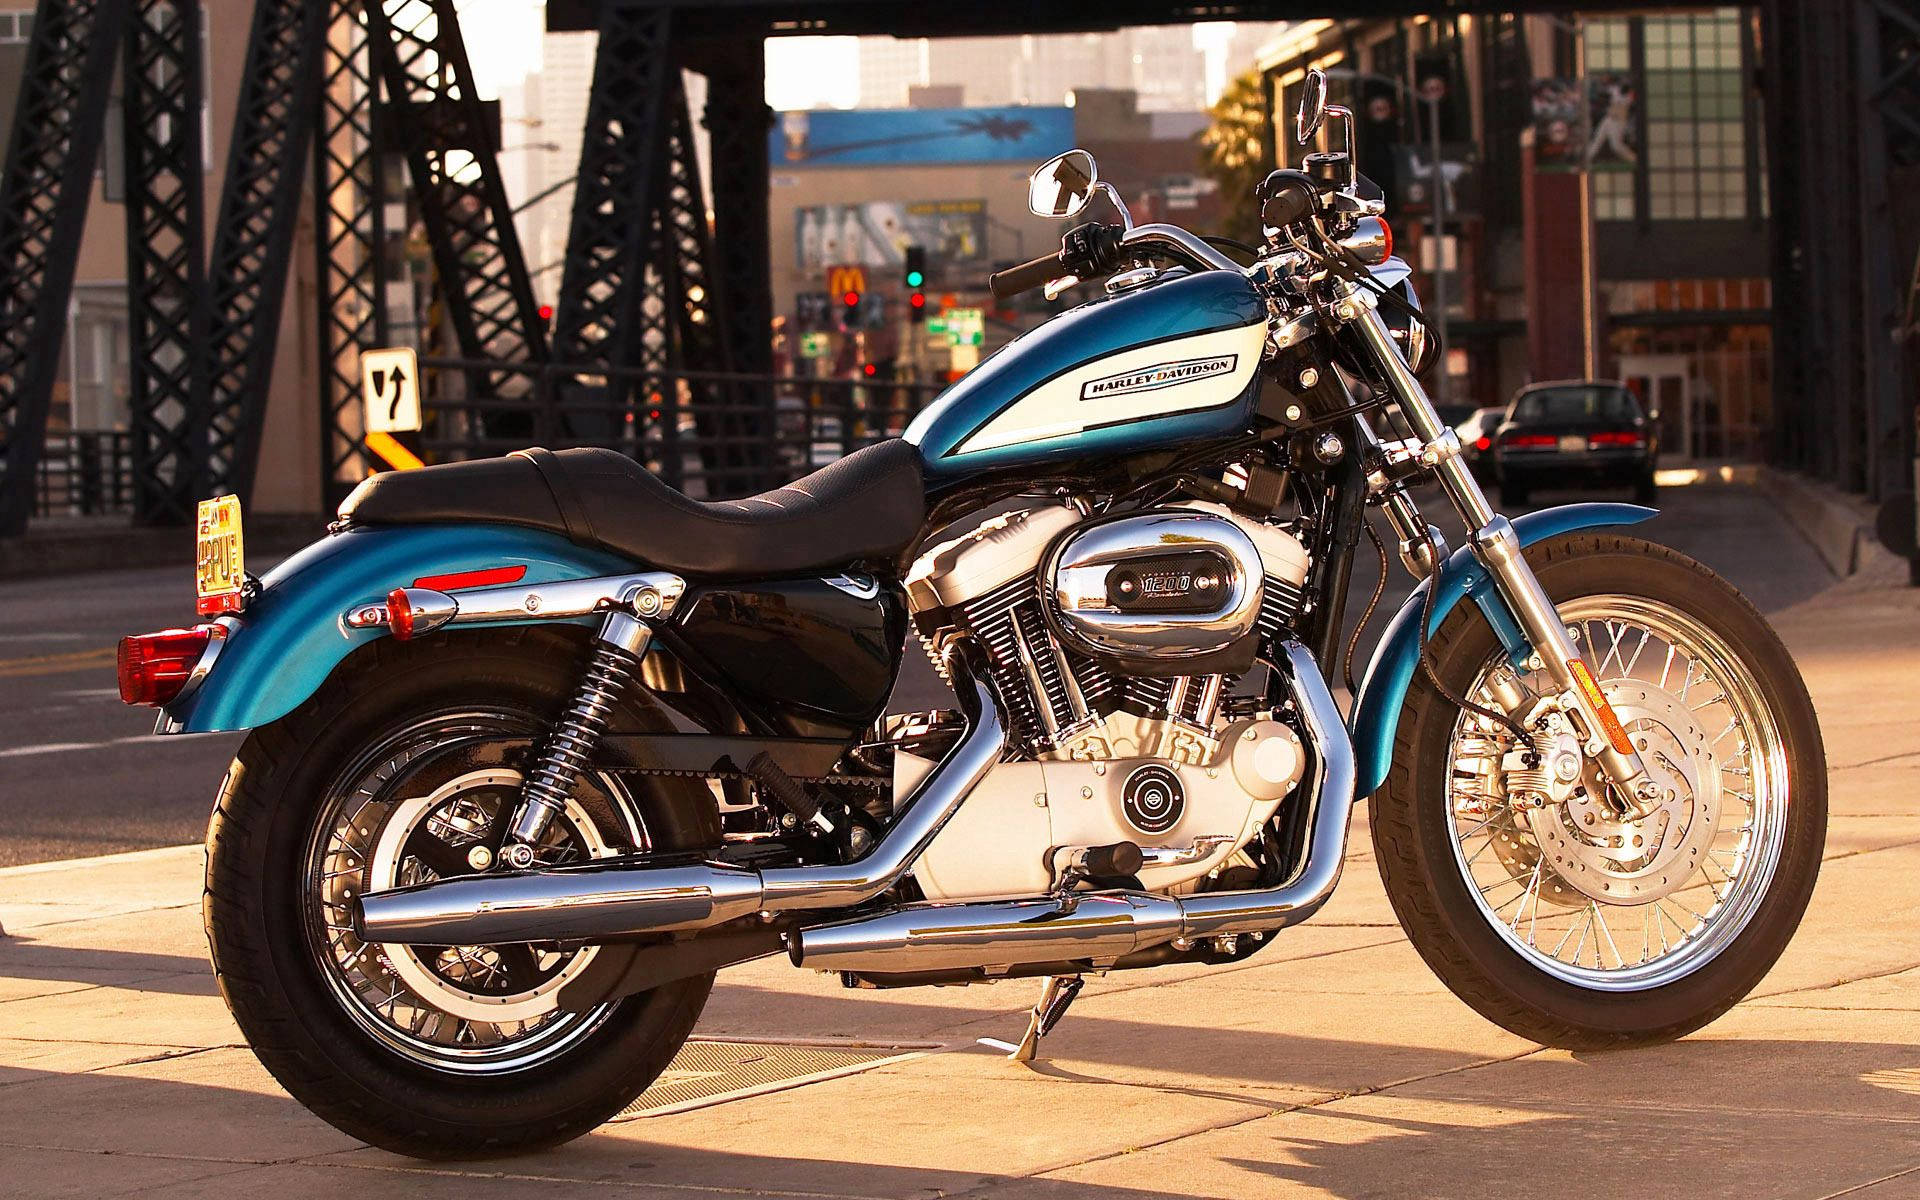 Harley Davidson In The City